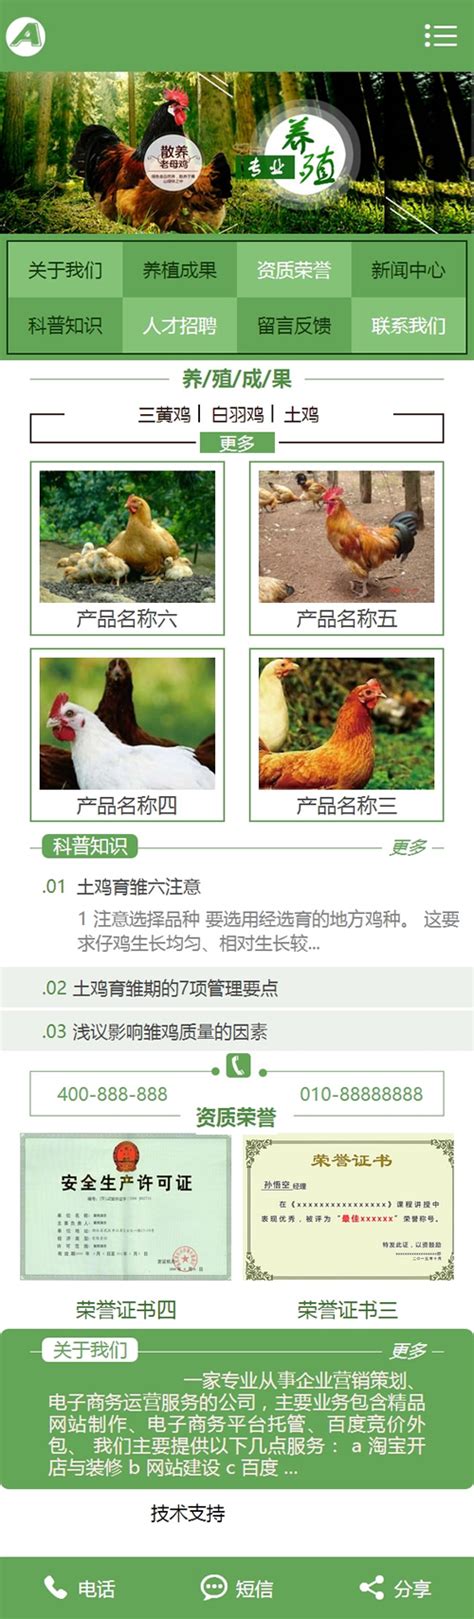 农业养殖农场网站源码 织梦家禽畜牧养殖网站模板（带手机版）-素材居